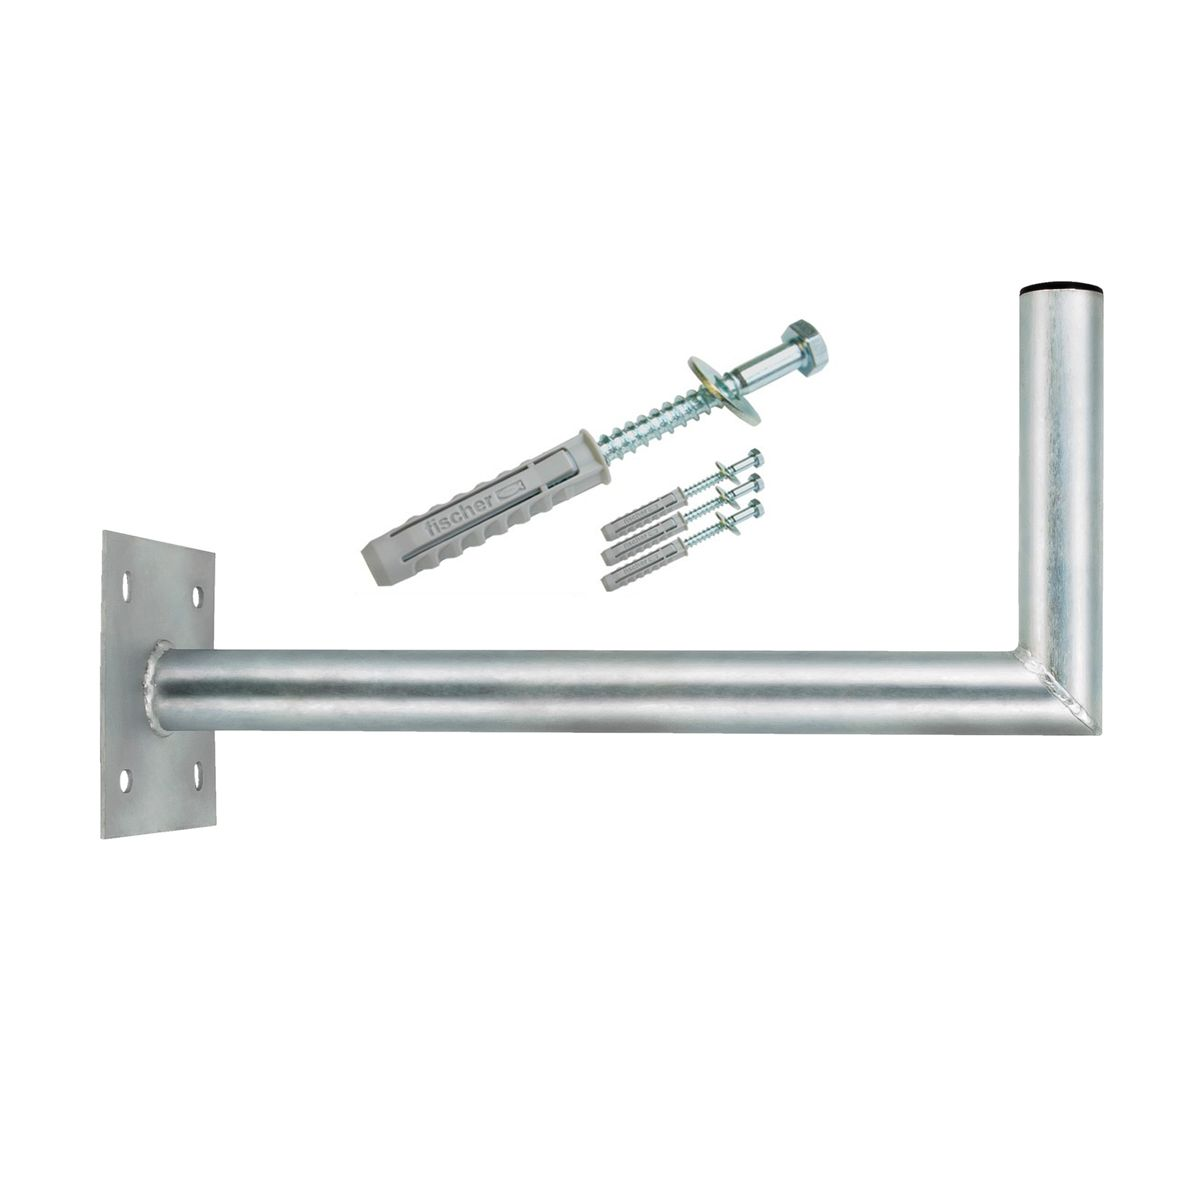 PREMIUMX 50-55cm Wandhalterung SAT-Wandhalterung, Stahl Schraubensatz Silber verzinkt Antenne Fischer SAT